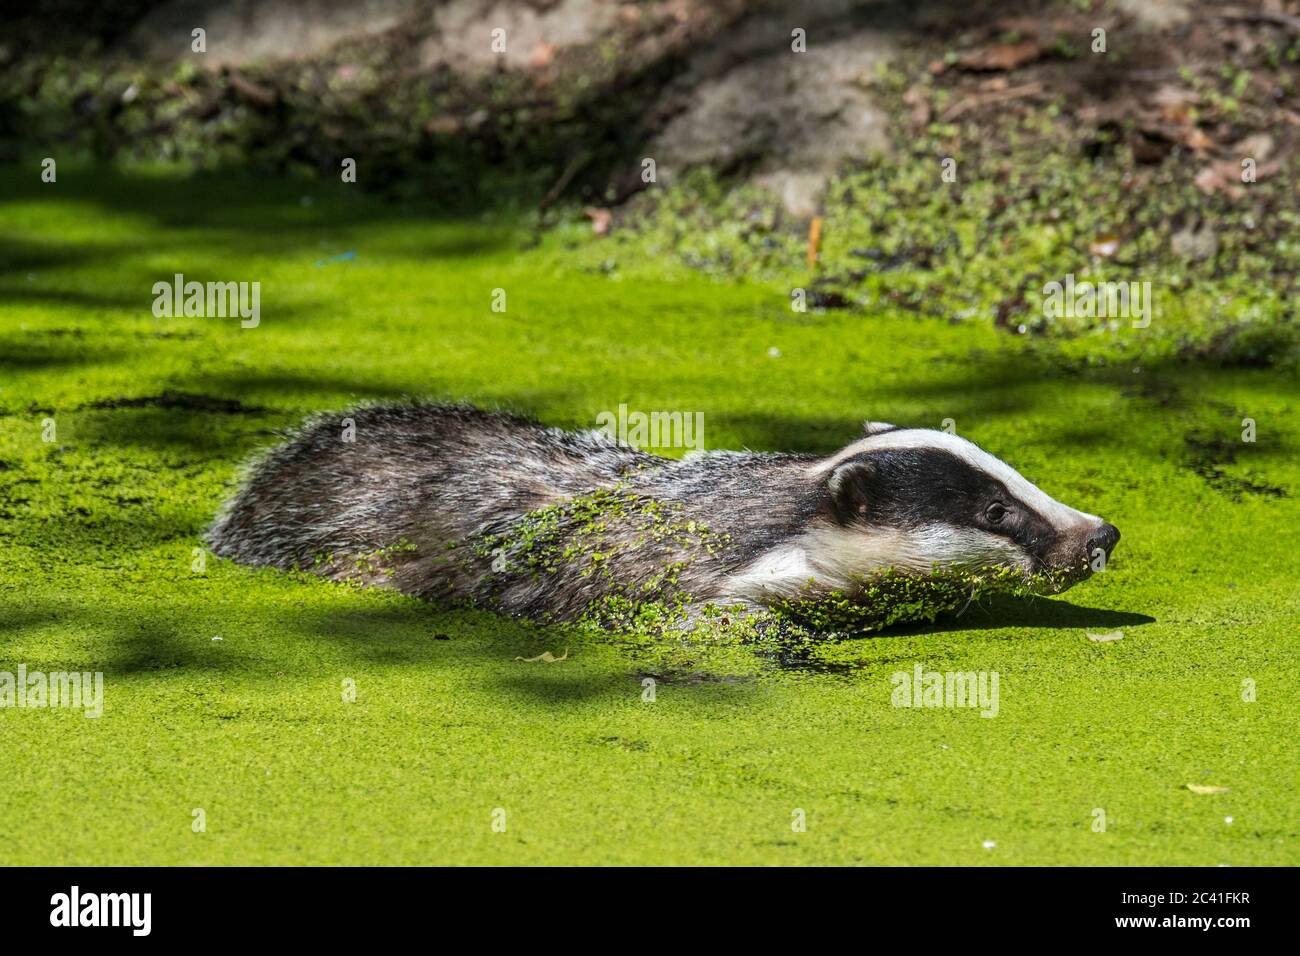 Blaireau européen (Meles meles) nageant dans l'eau d'un étang / piscine couverte de duckweed Banque D'Images